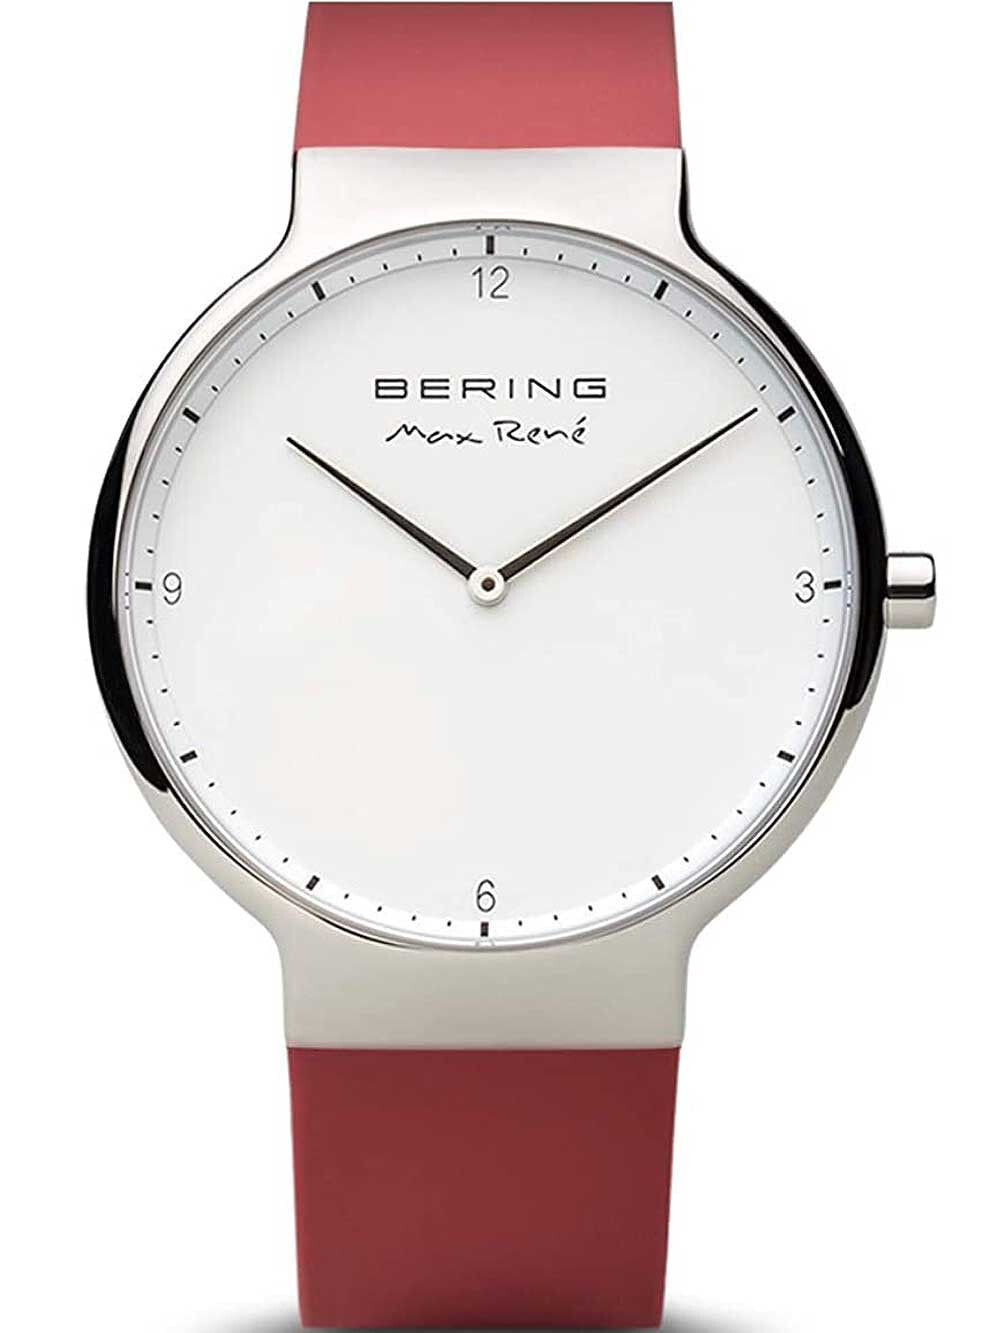 Мужские наручные часы с розовым резиновым ремешком Bering 15540-500 Max Ren silicone mens watch 40mm 5ATM